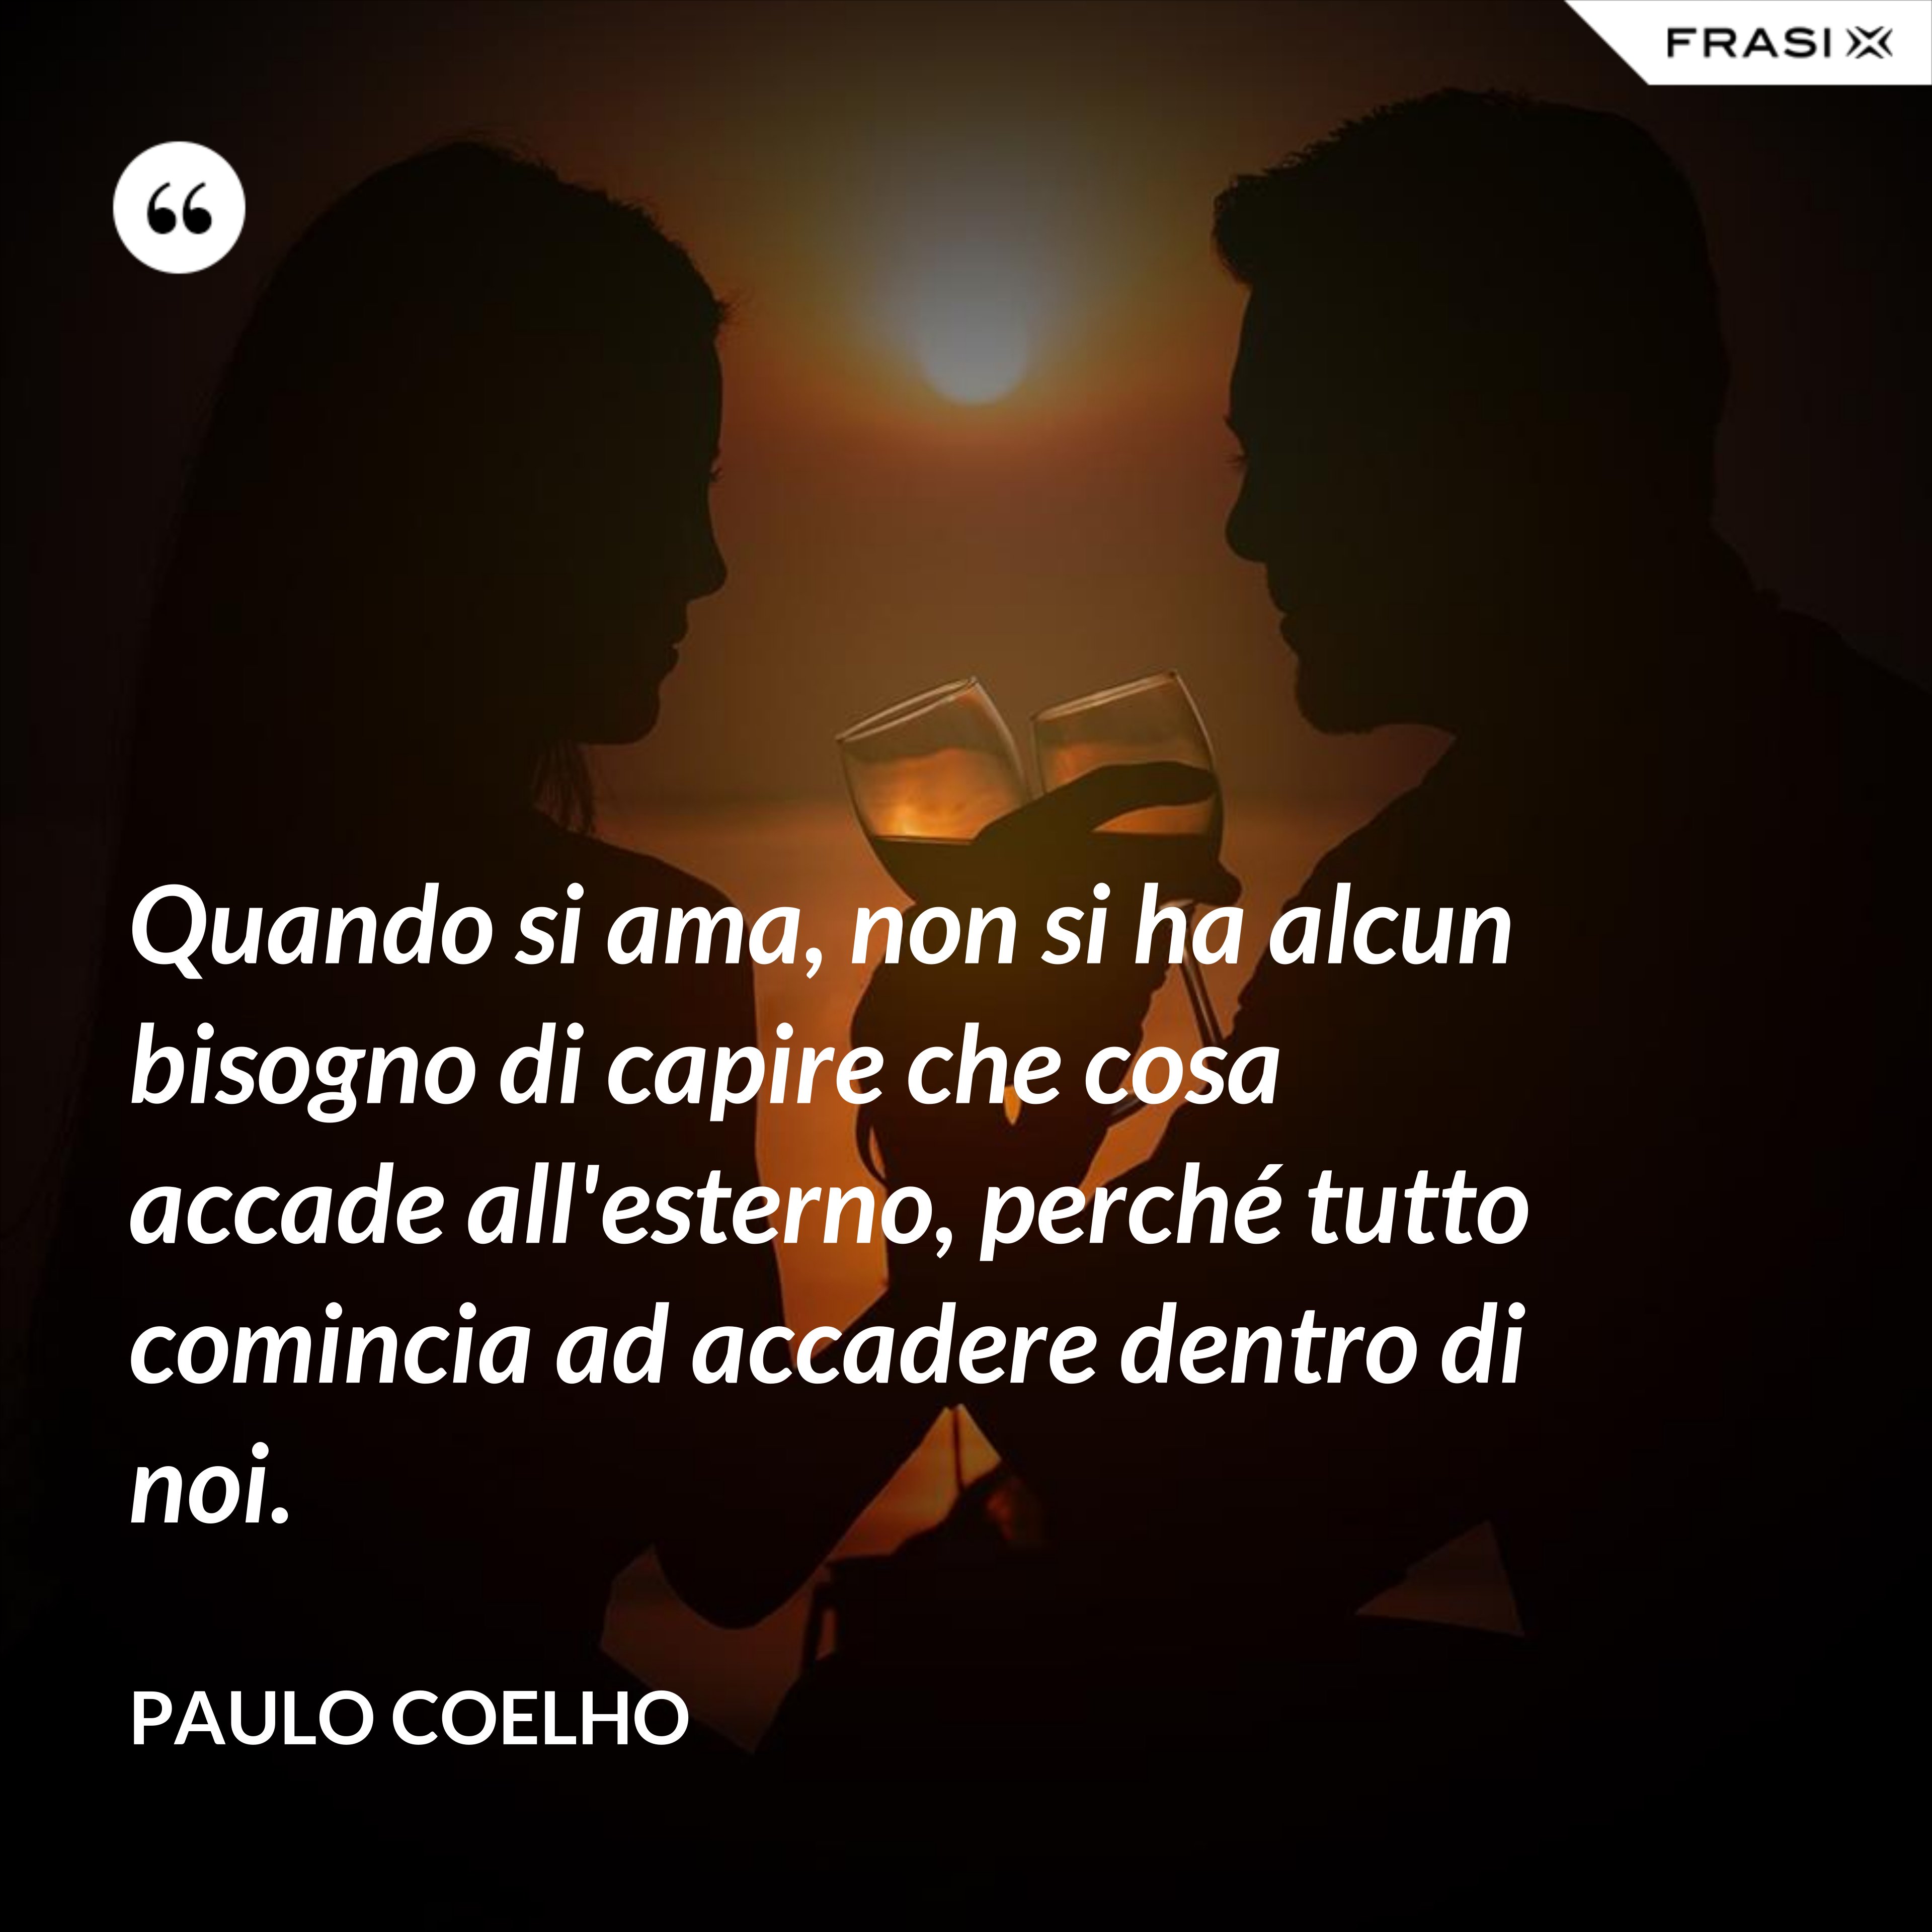 Quando si ama, non si ha alcun bisogno di capire che cosa accade all'esterno, perché tutto comincia ad accadere dentro di noi. - Paulo Coelho